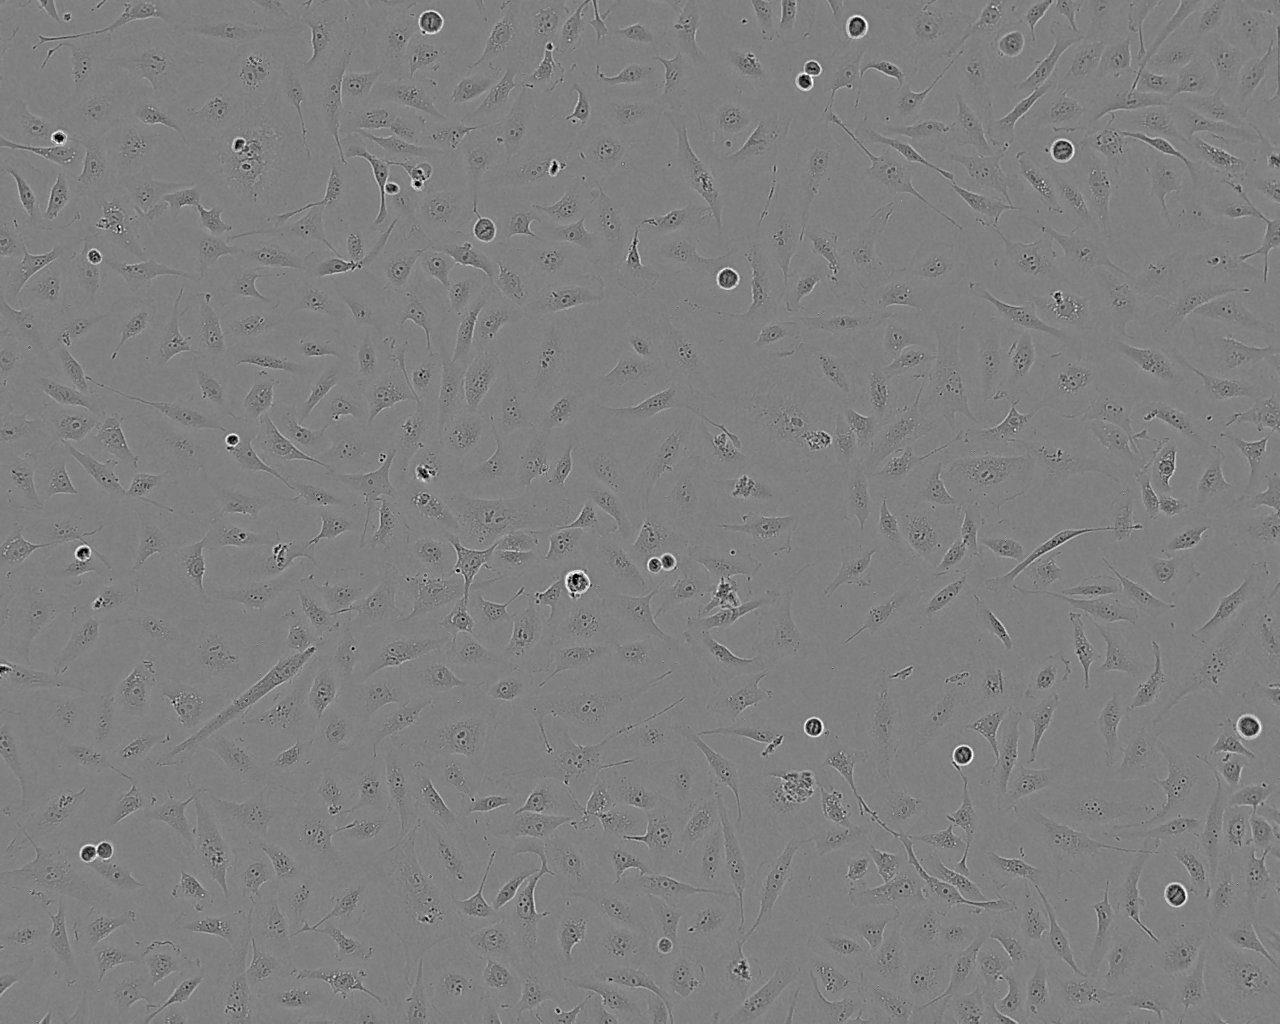 FRhK-4 恒河猴胚肾细胞系